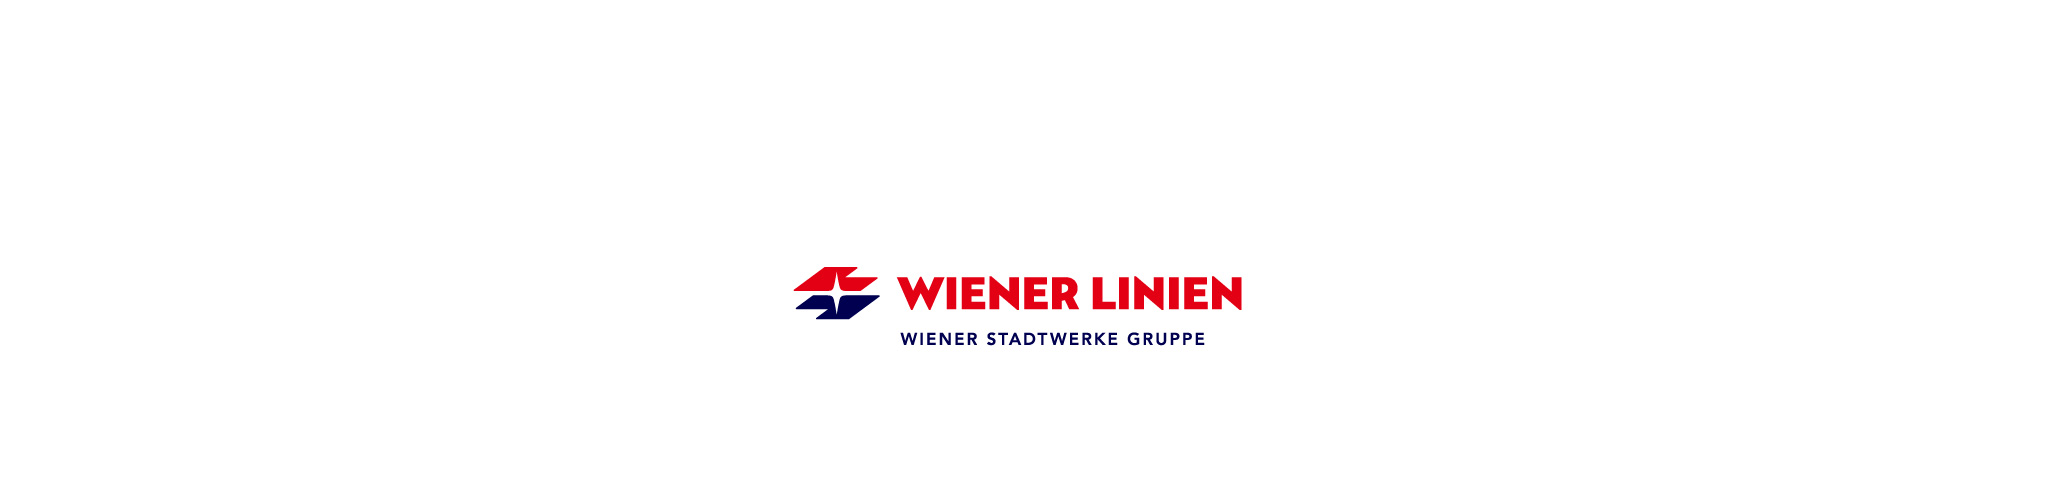 wiener-linien-logo6